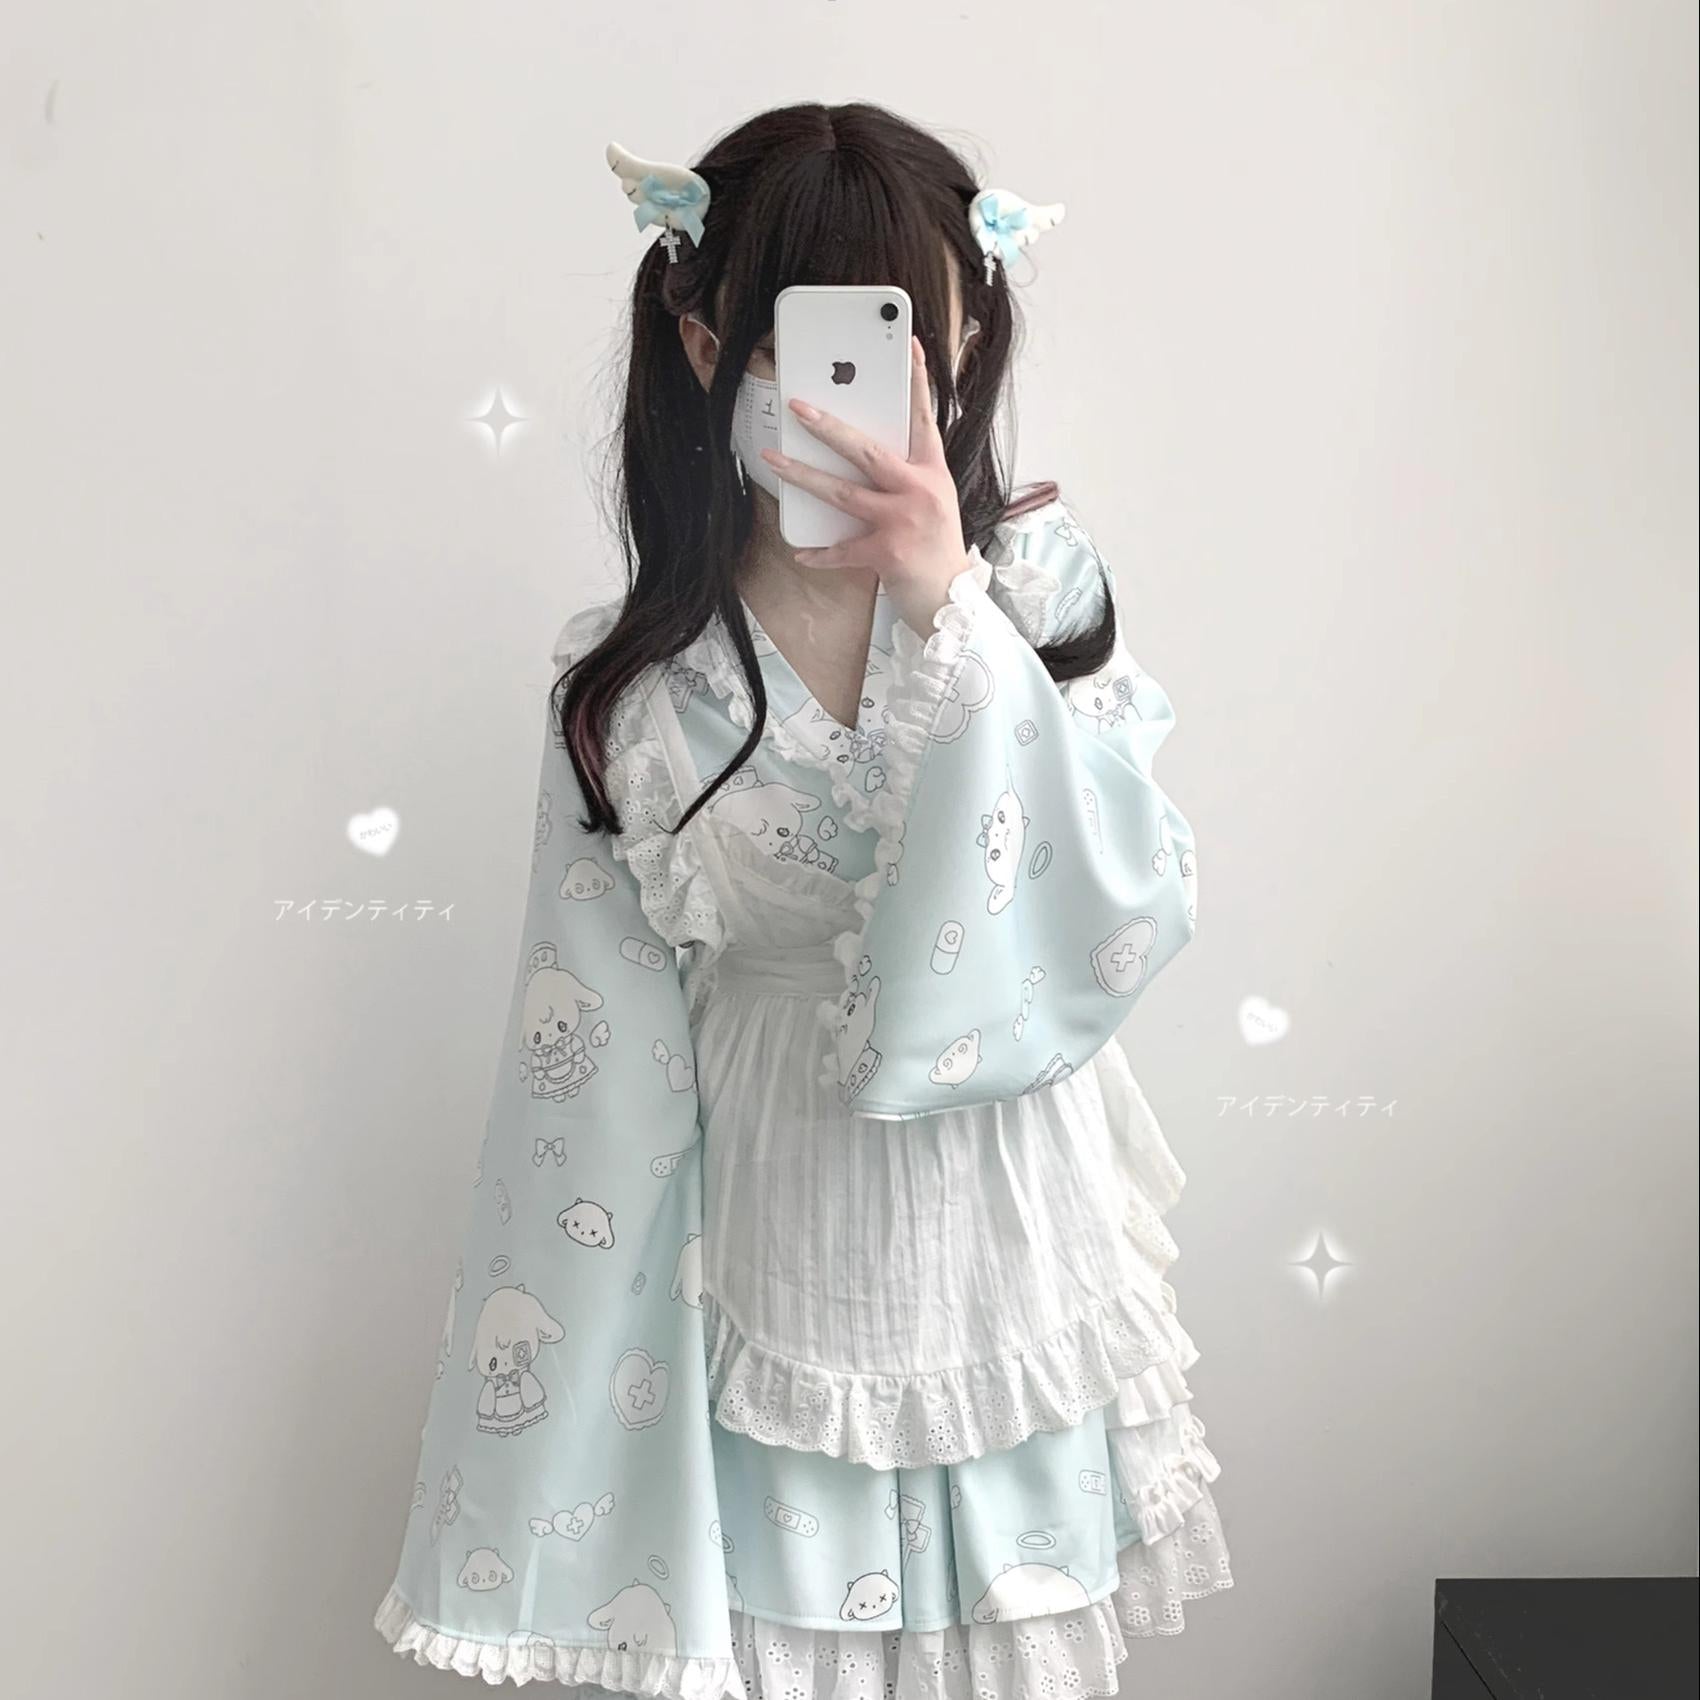 Tenshi Kaiwai Patchwork Skirt Kimono Top White Apron Three-Piece Set 36786:536846